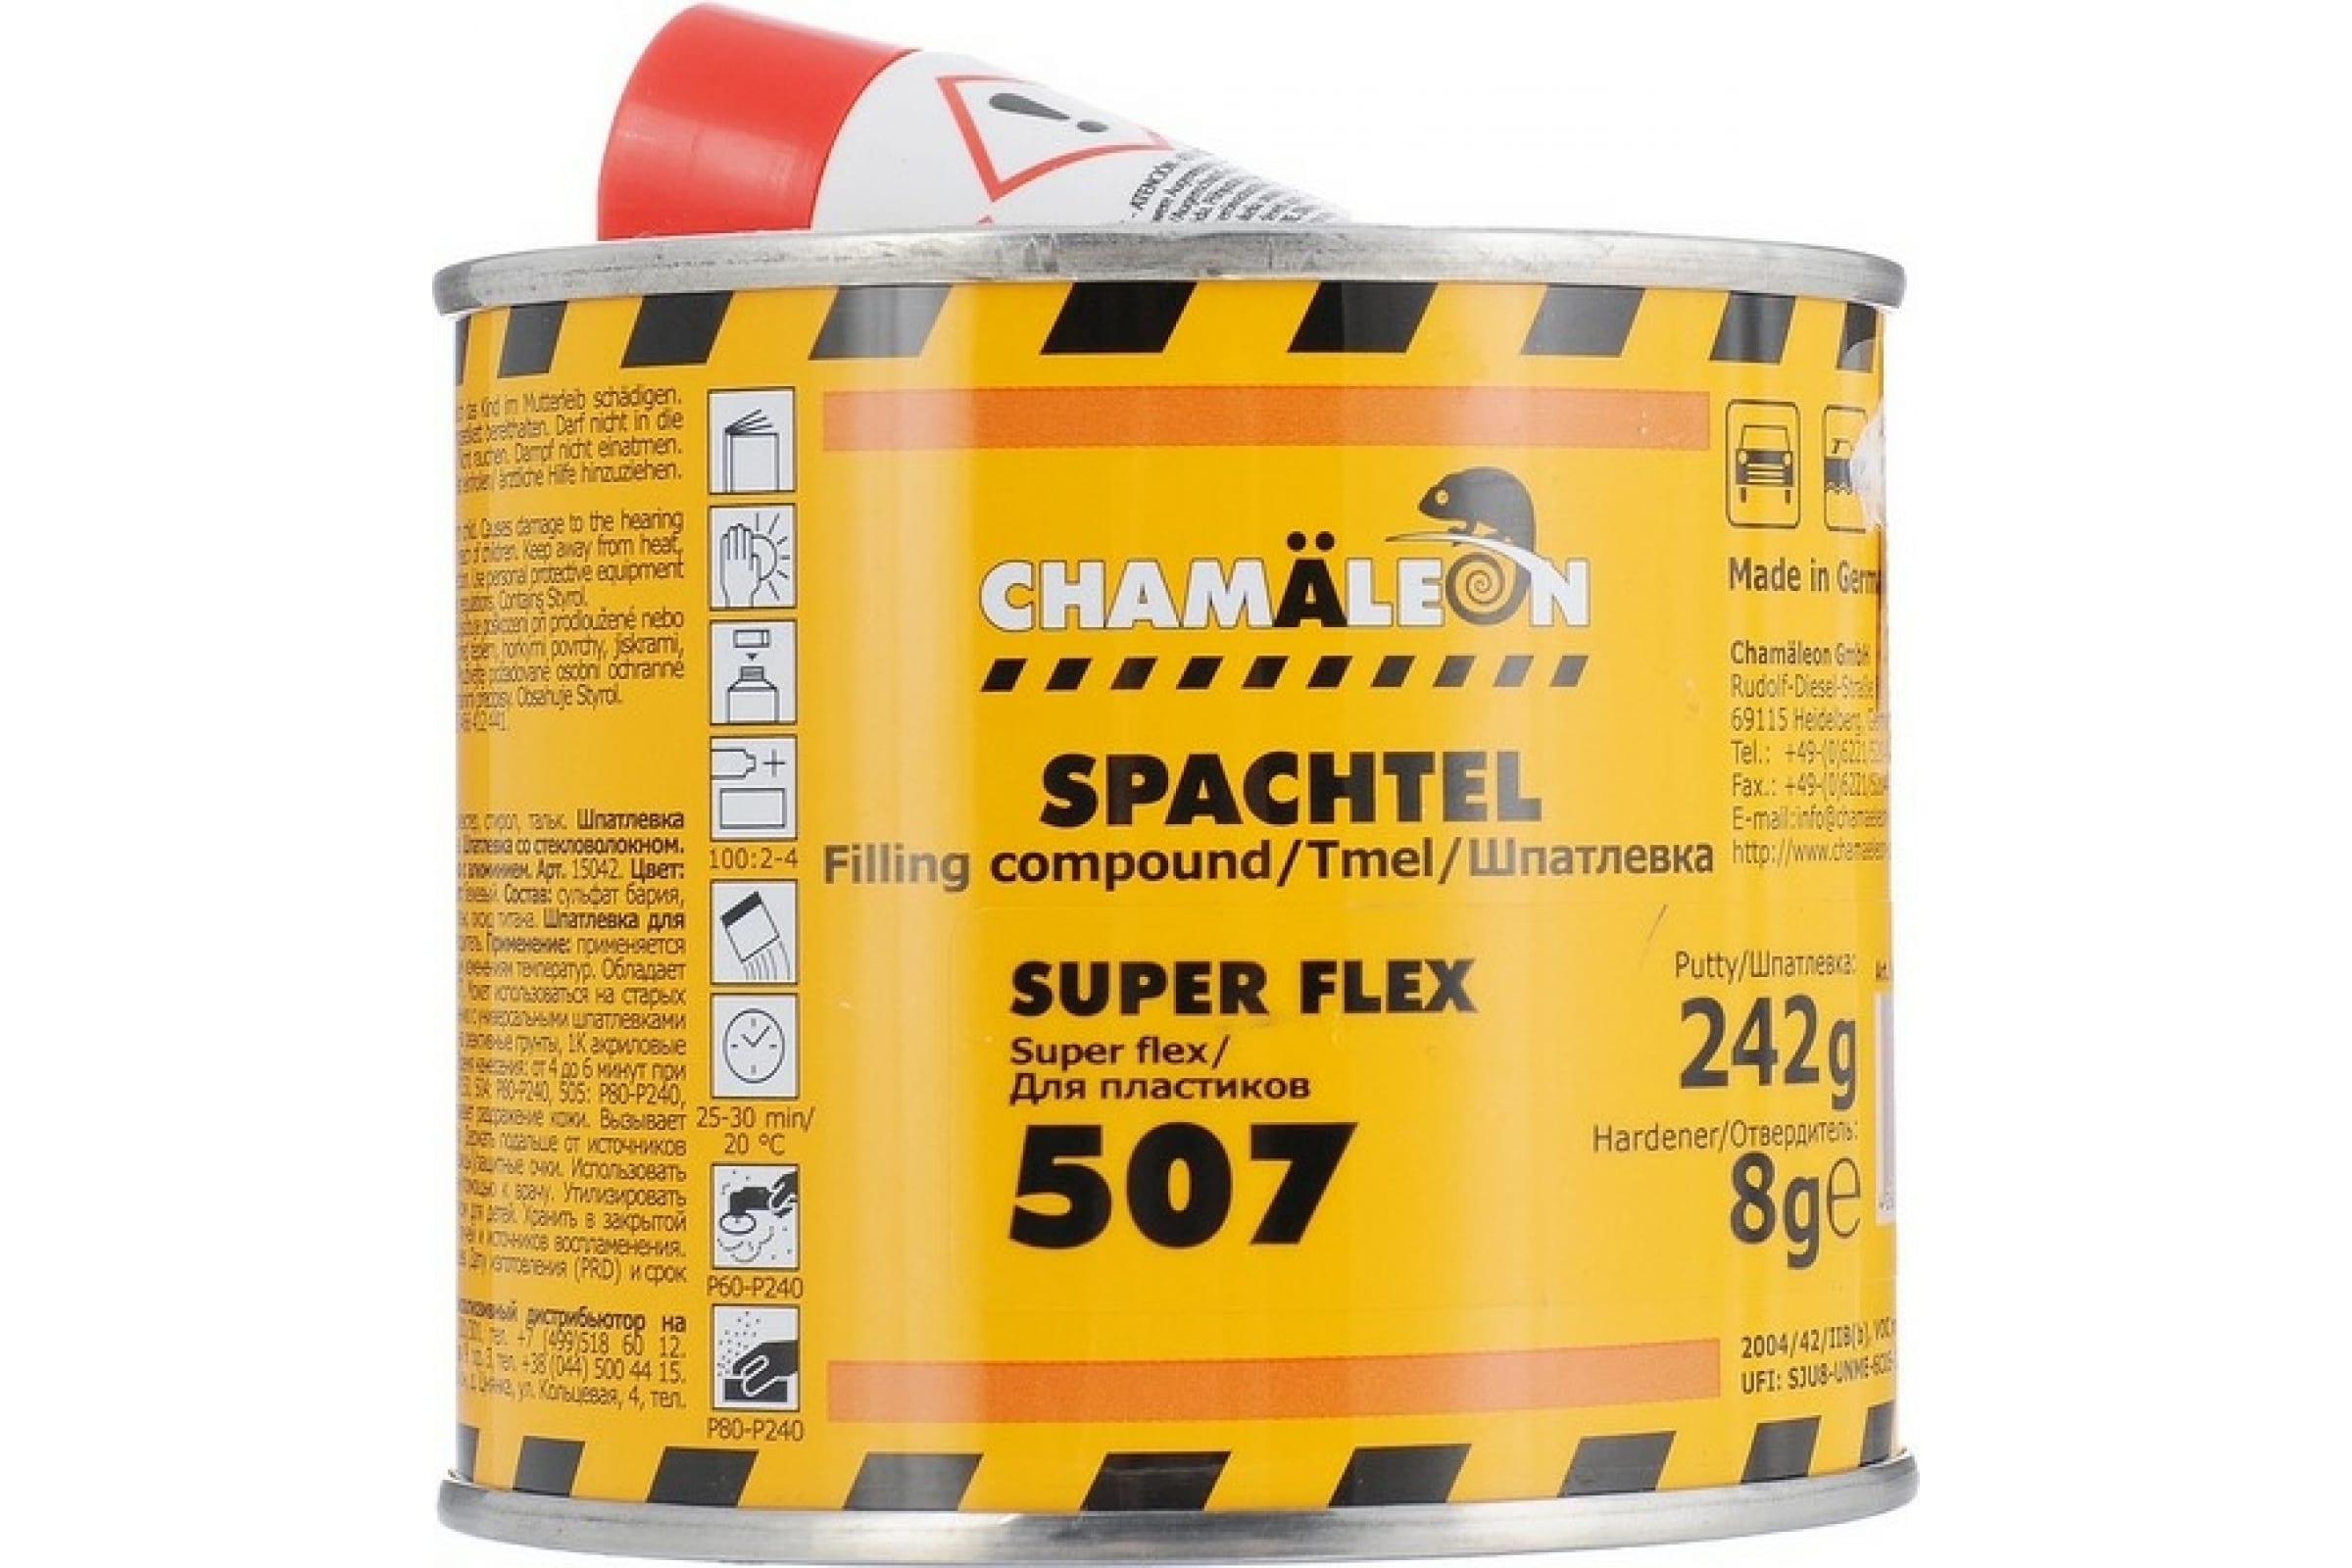 CHAMAELEON Шпатлевка для пластиков вкл.отвердитель 0,250кг 15072 отвердитель для акрилового грунта chamaeleon